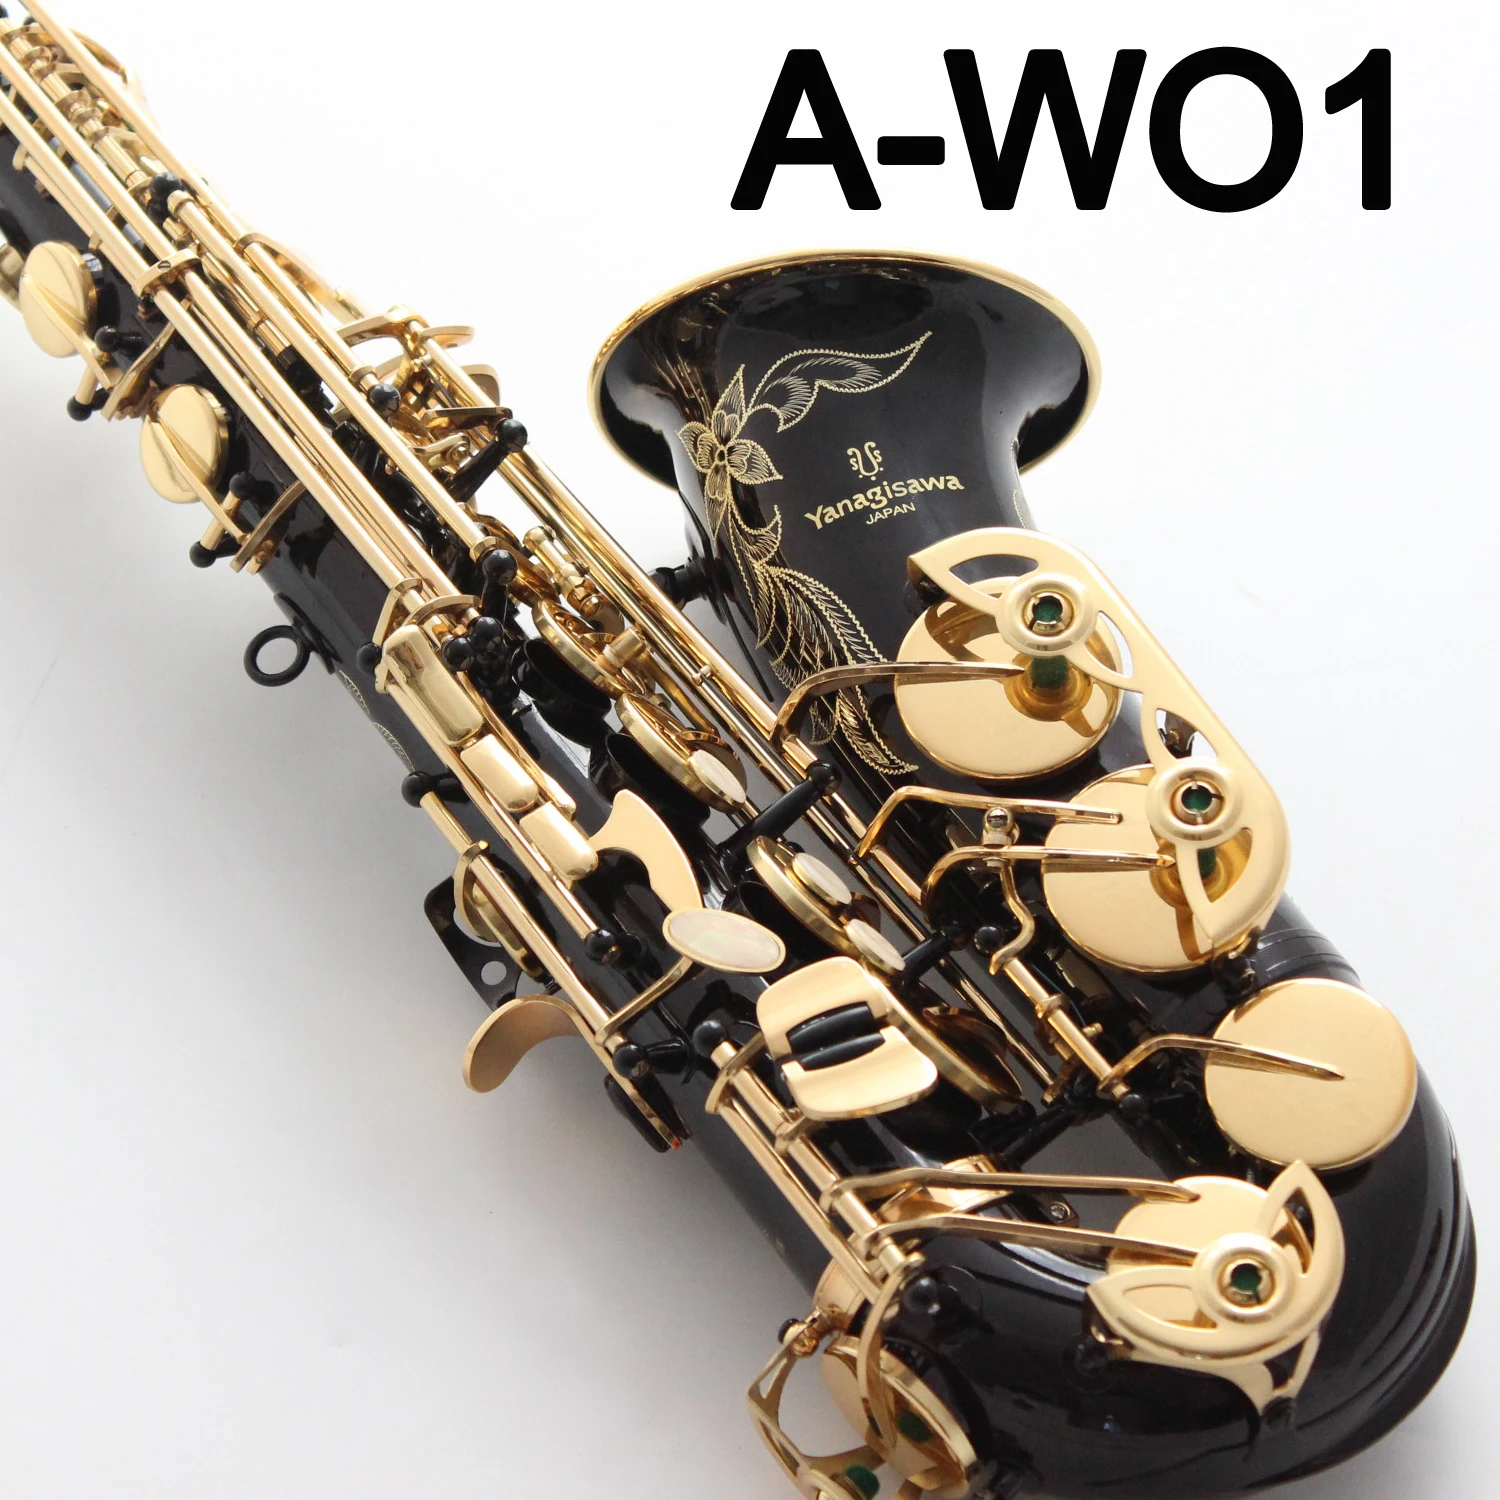 Черный саксофон. Yanagisawa professional a-wo1s. Саксофон черный. Футляр для Альта. Покраска в черный никель саксофона.